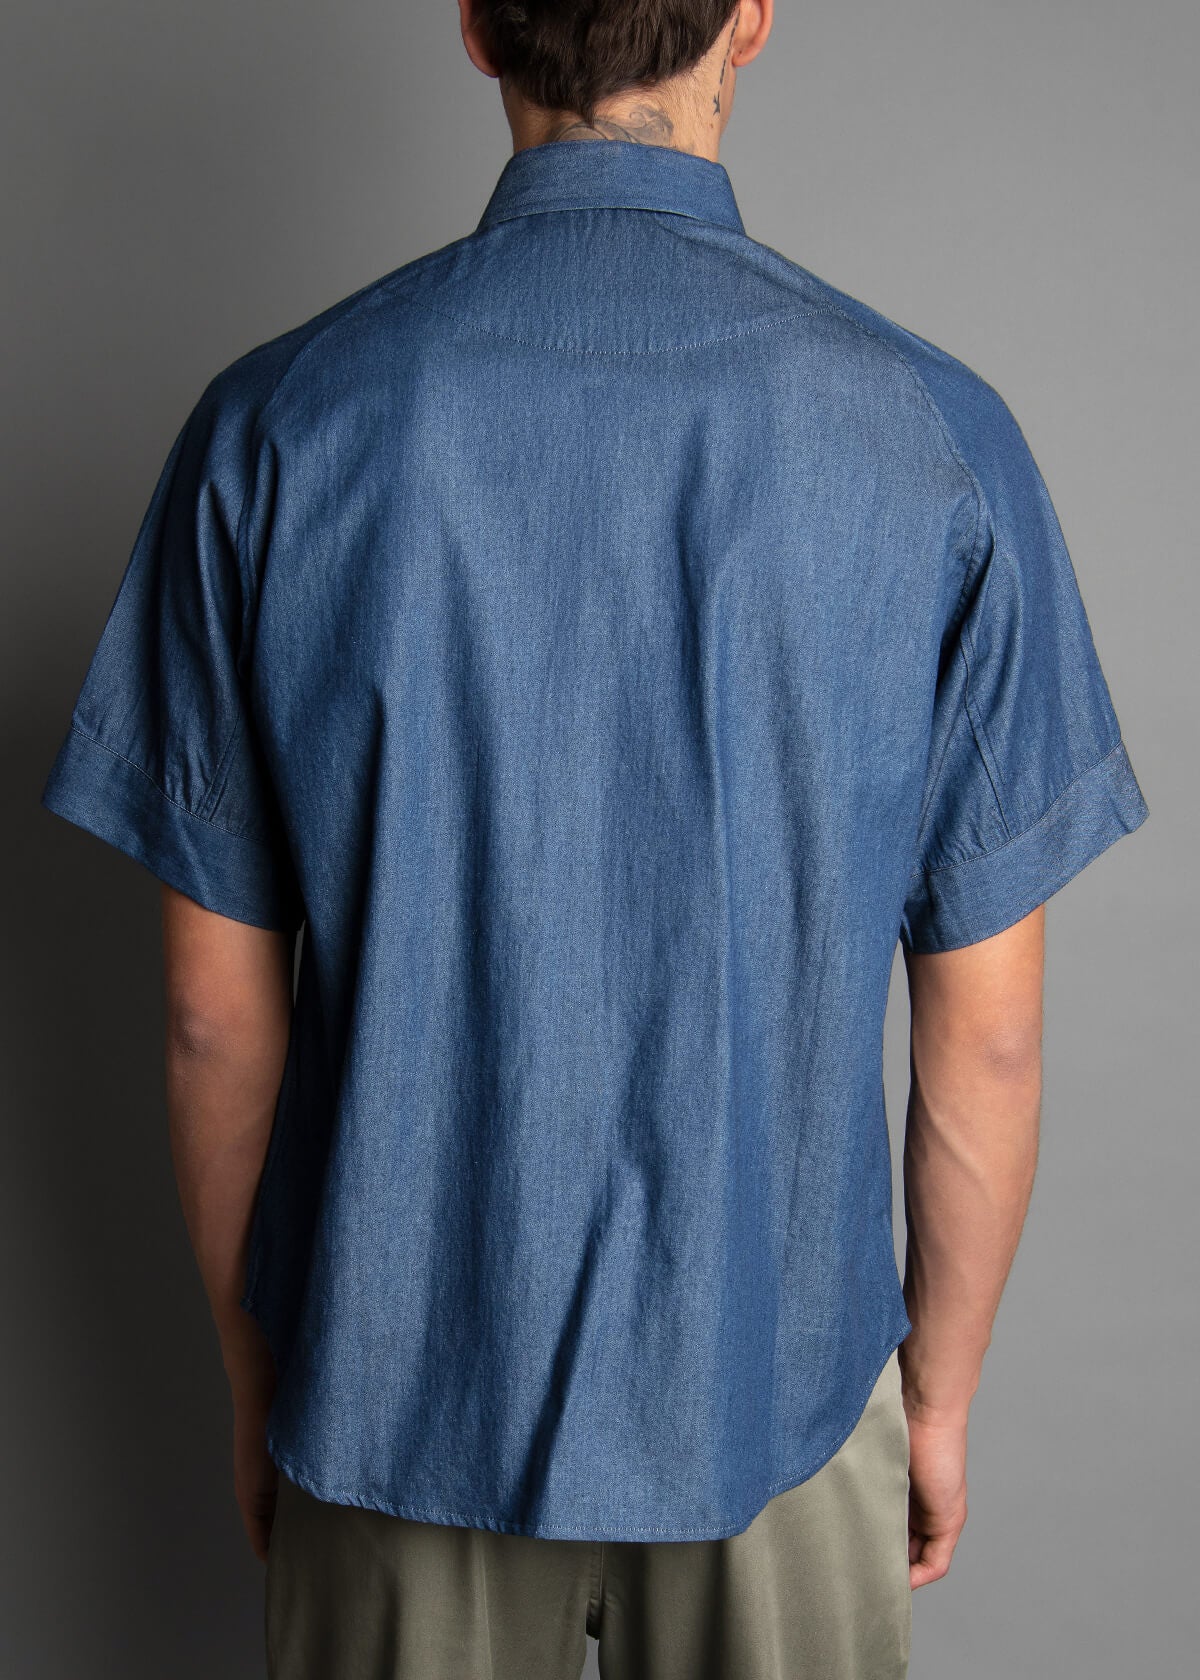 relaxed fit dark blue denim shirt for men